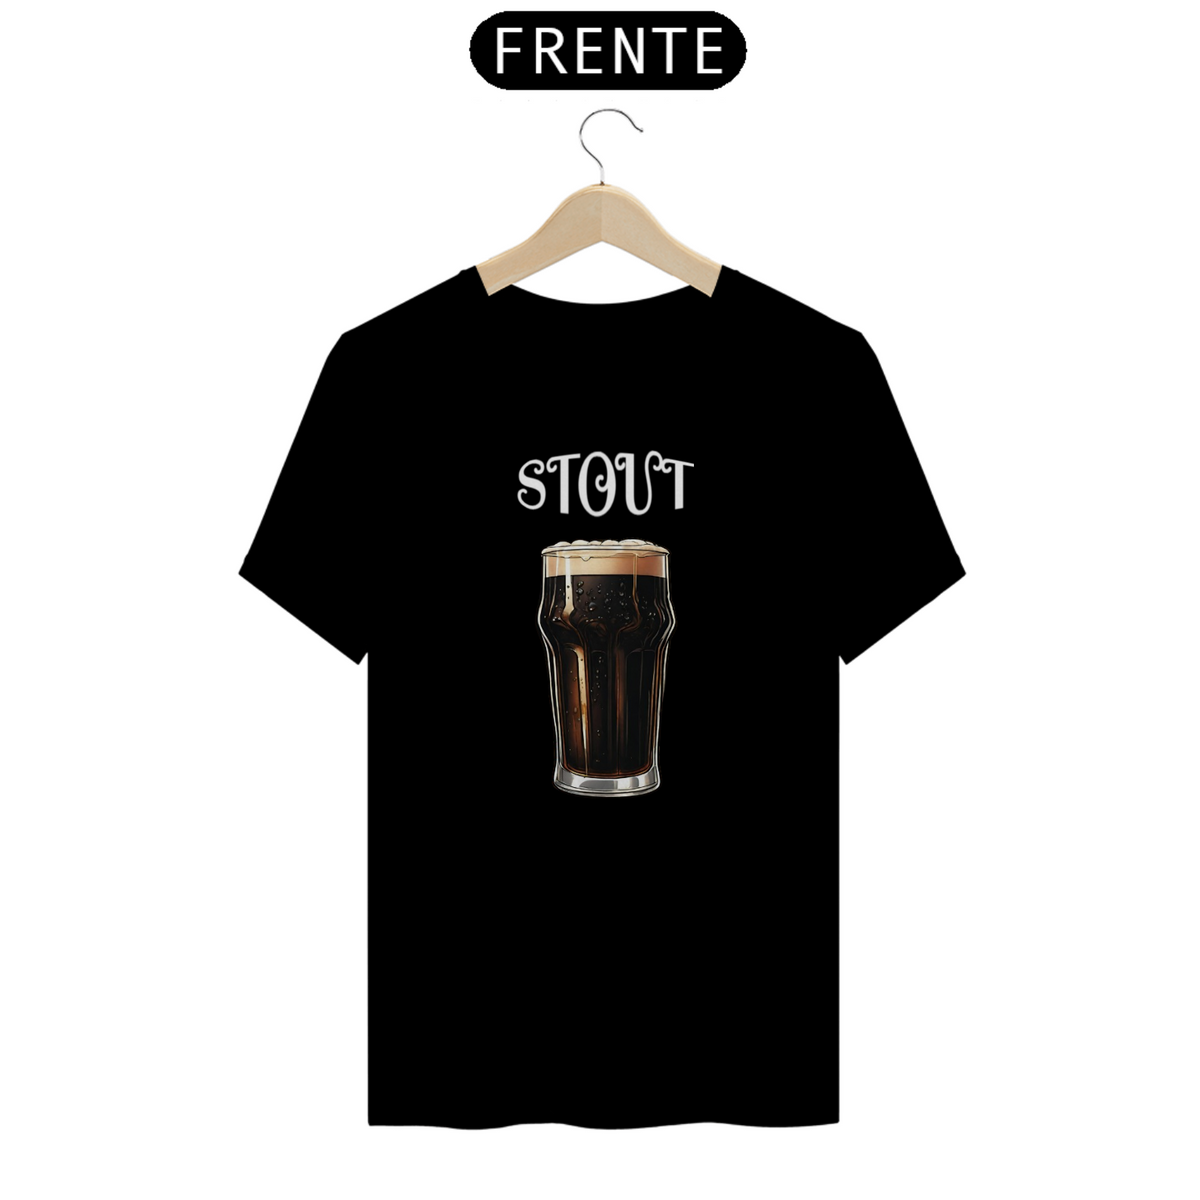 Nome do produto: Camiseta Stout